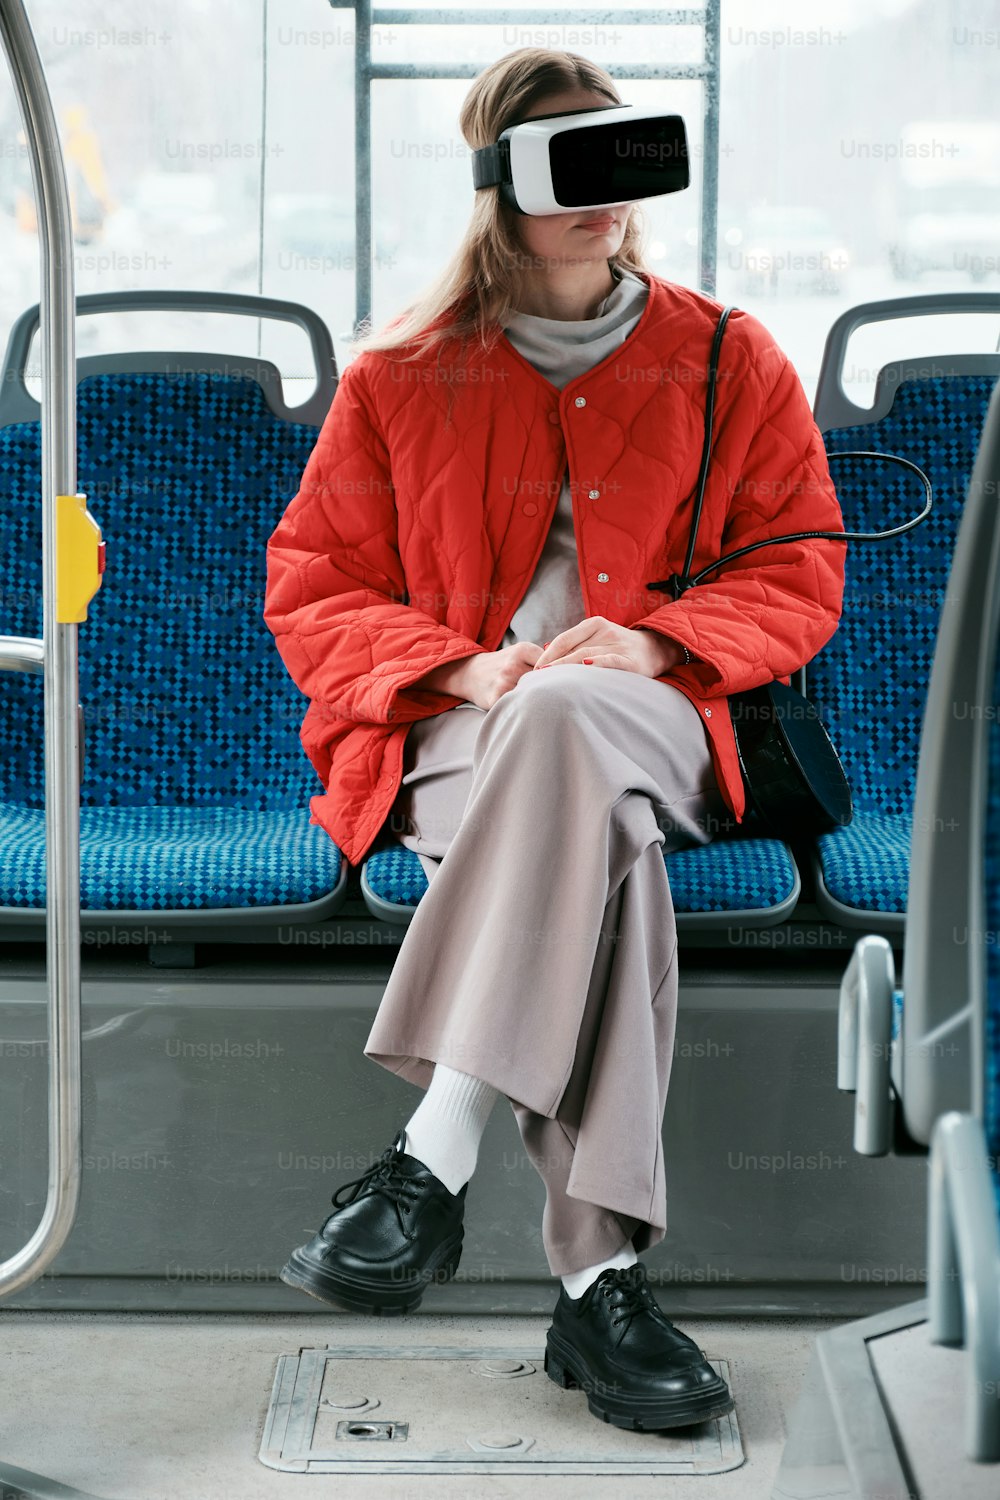 빨간 재킷을 입고 버스에 앉아 있는 여성